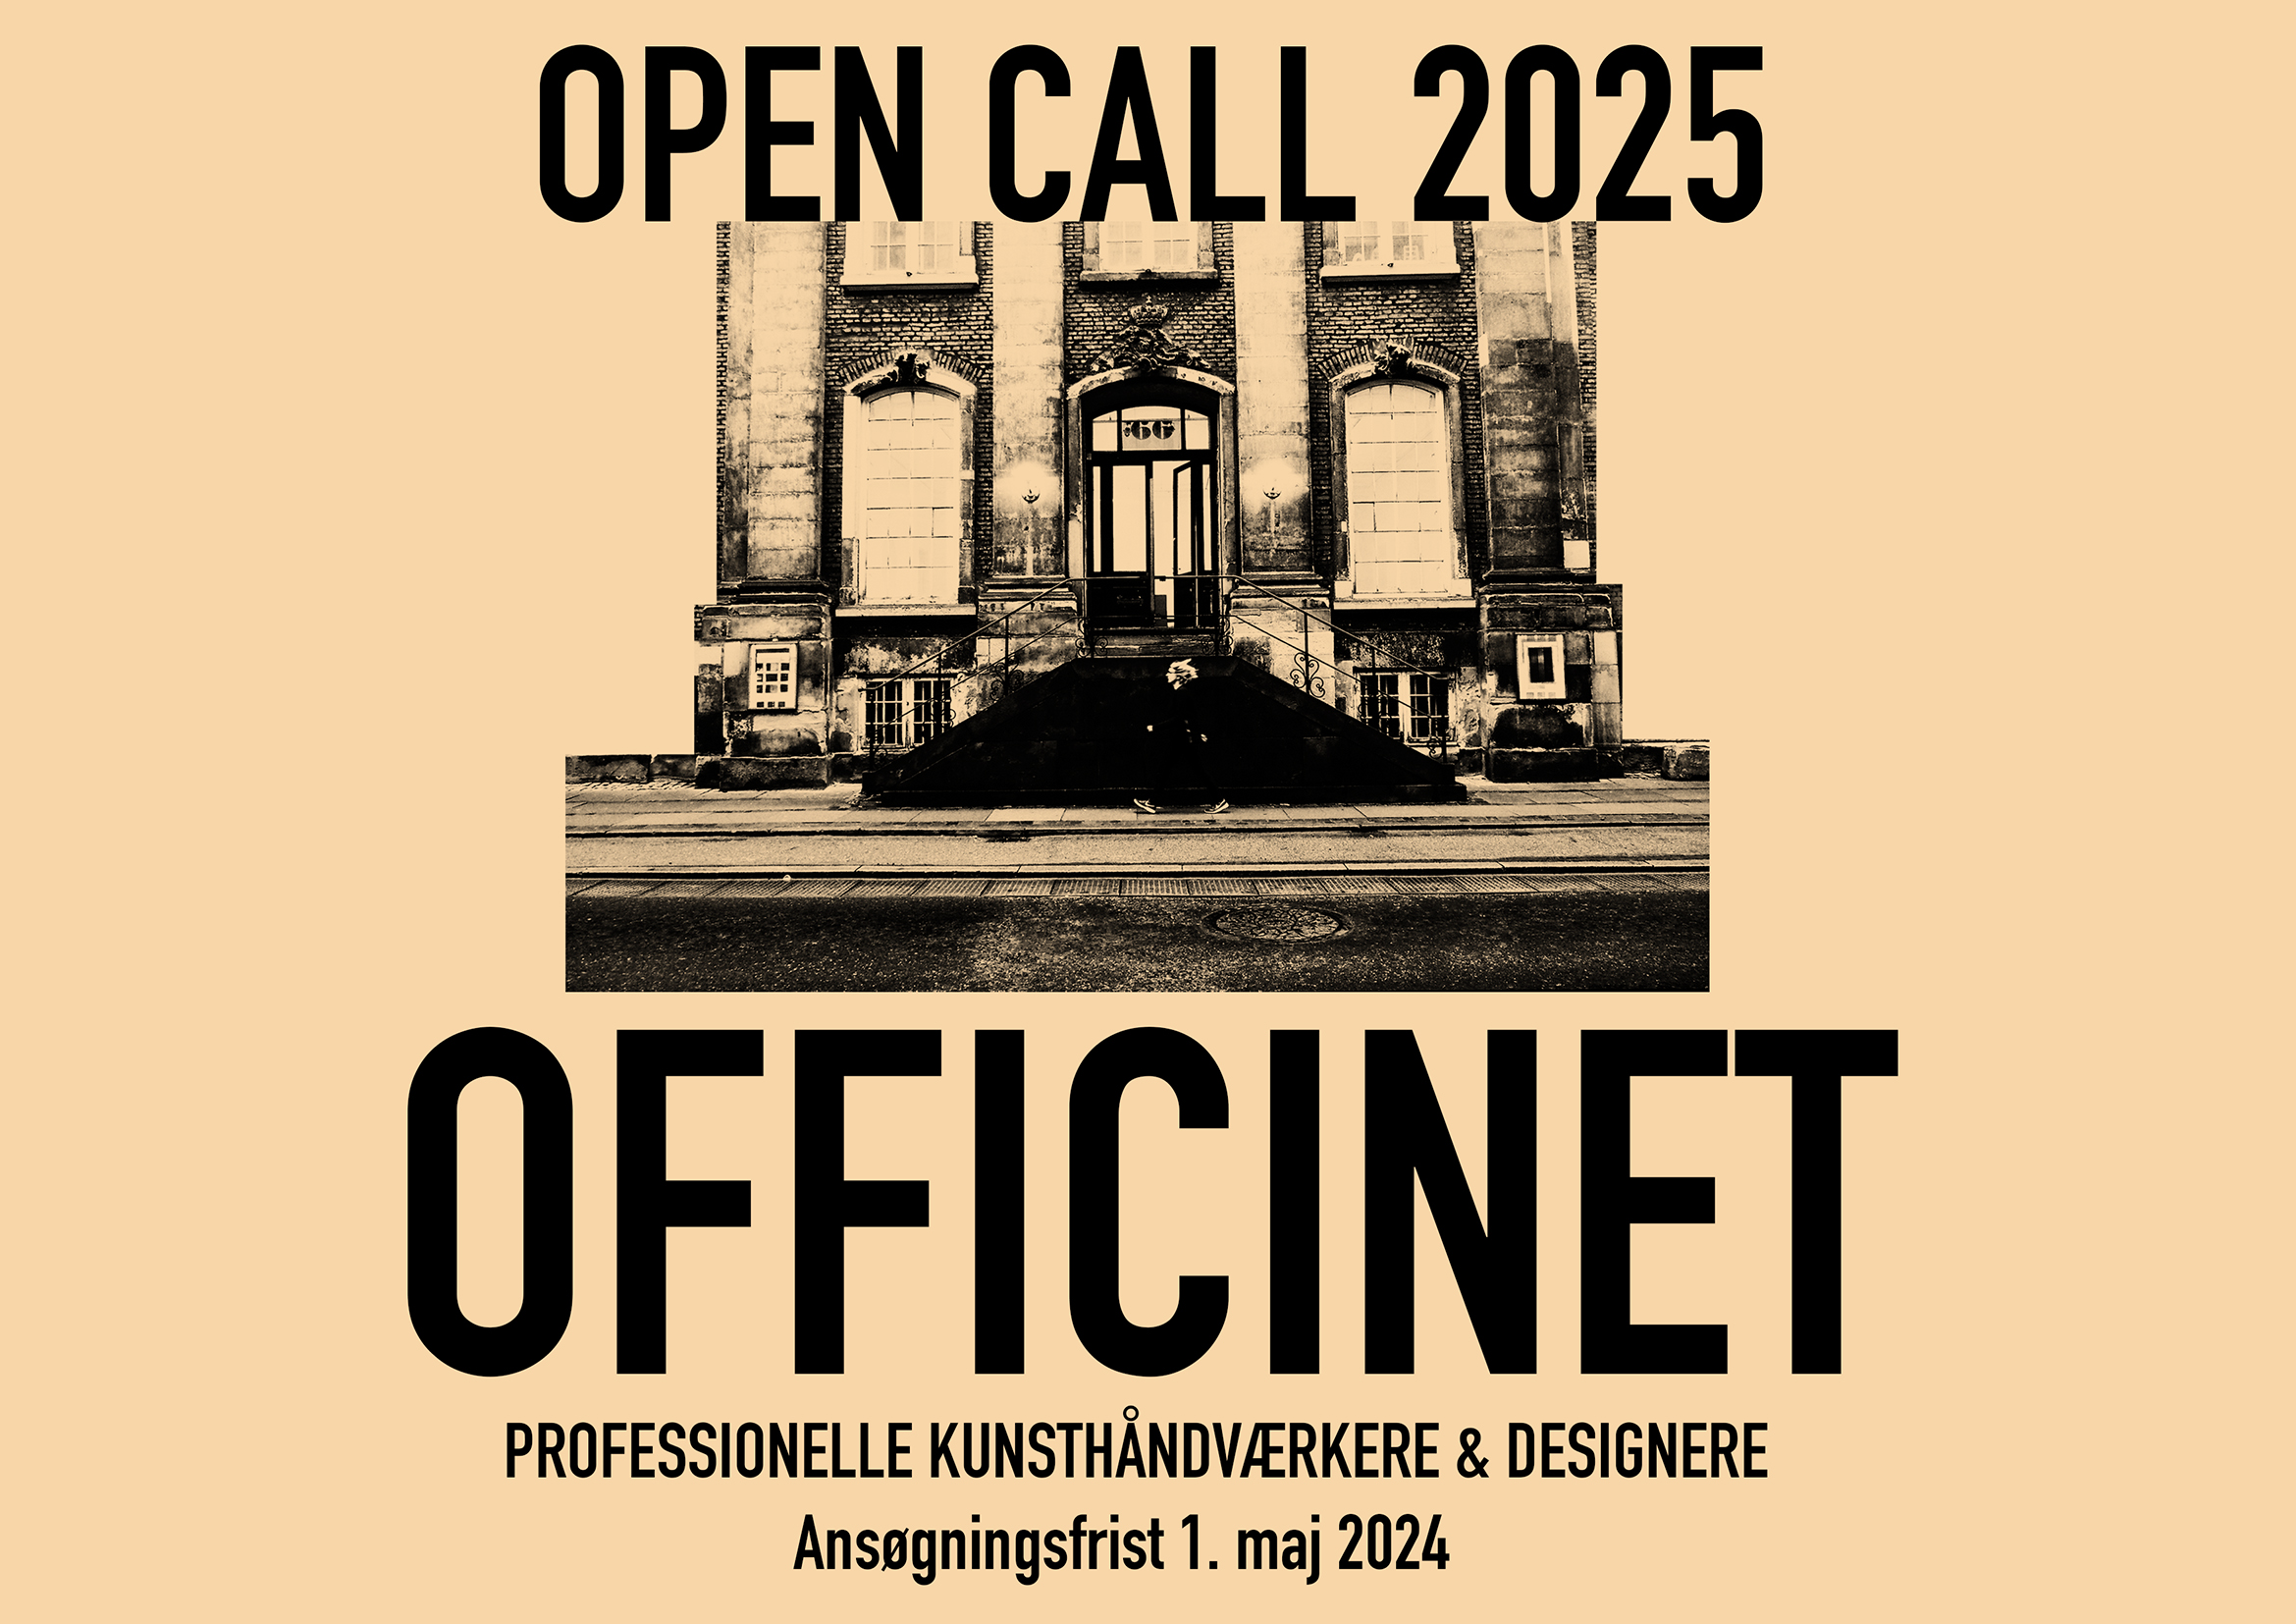 Open Call for professionelle kunsthåndværkere og designere til udstillingsåret 2025. Grafisk design: Helle Vibeke Jensen.